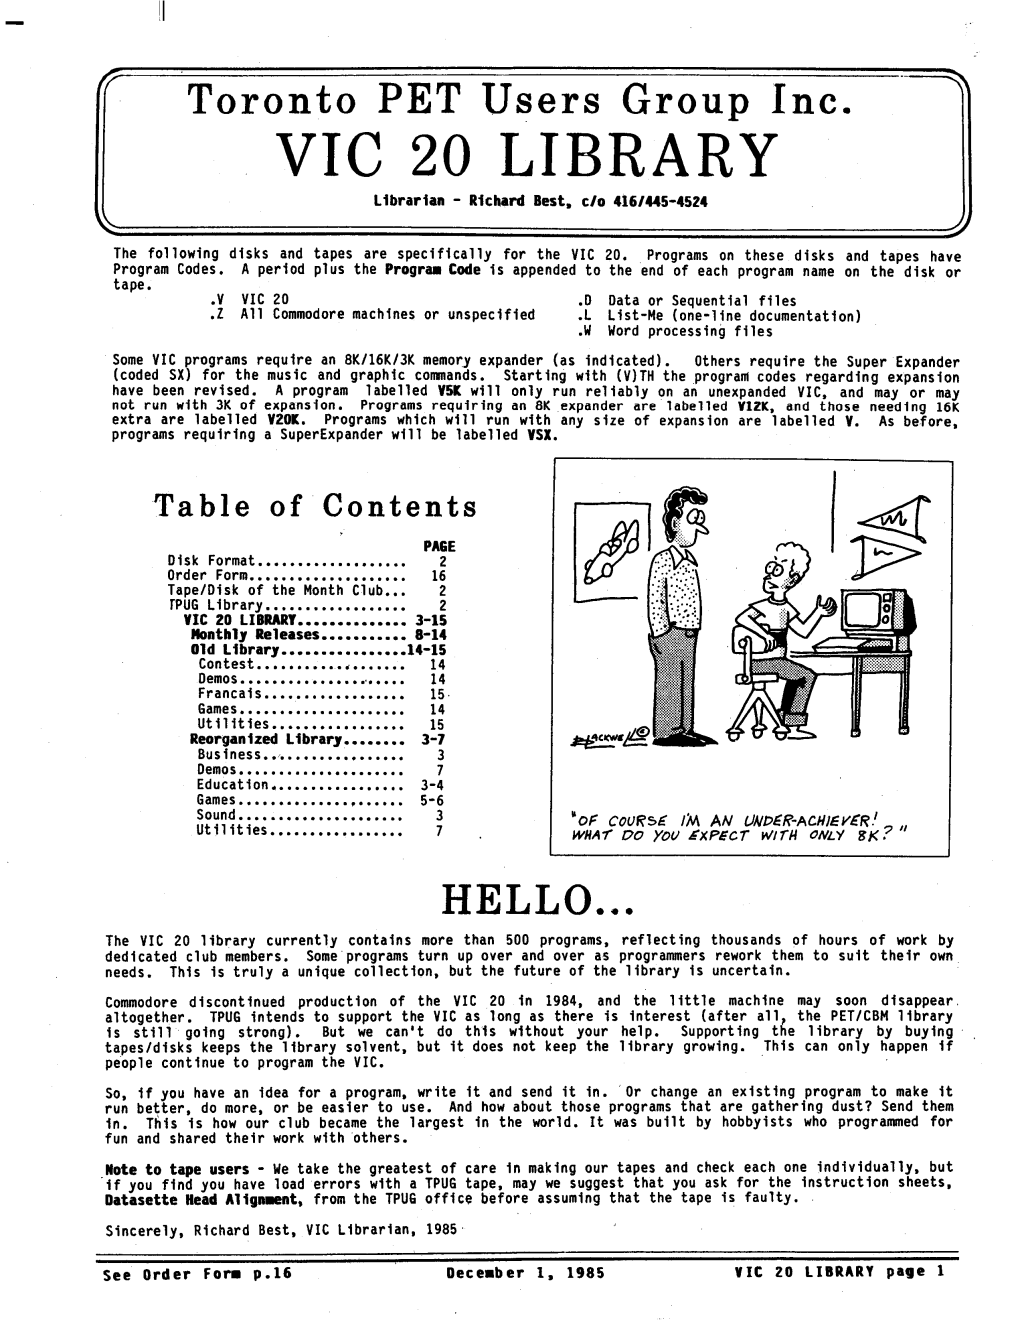 TPUG VIC 20 Library